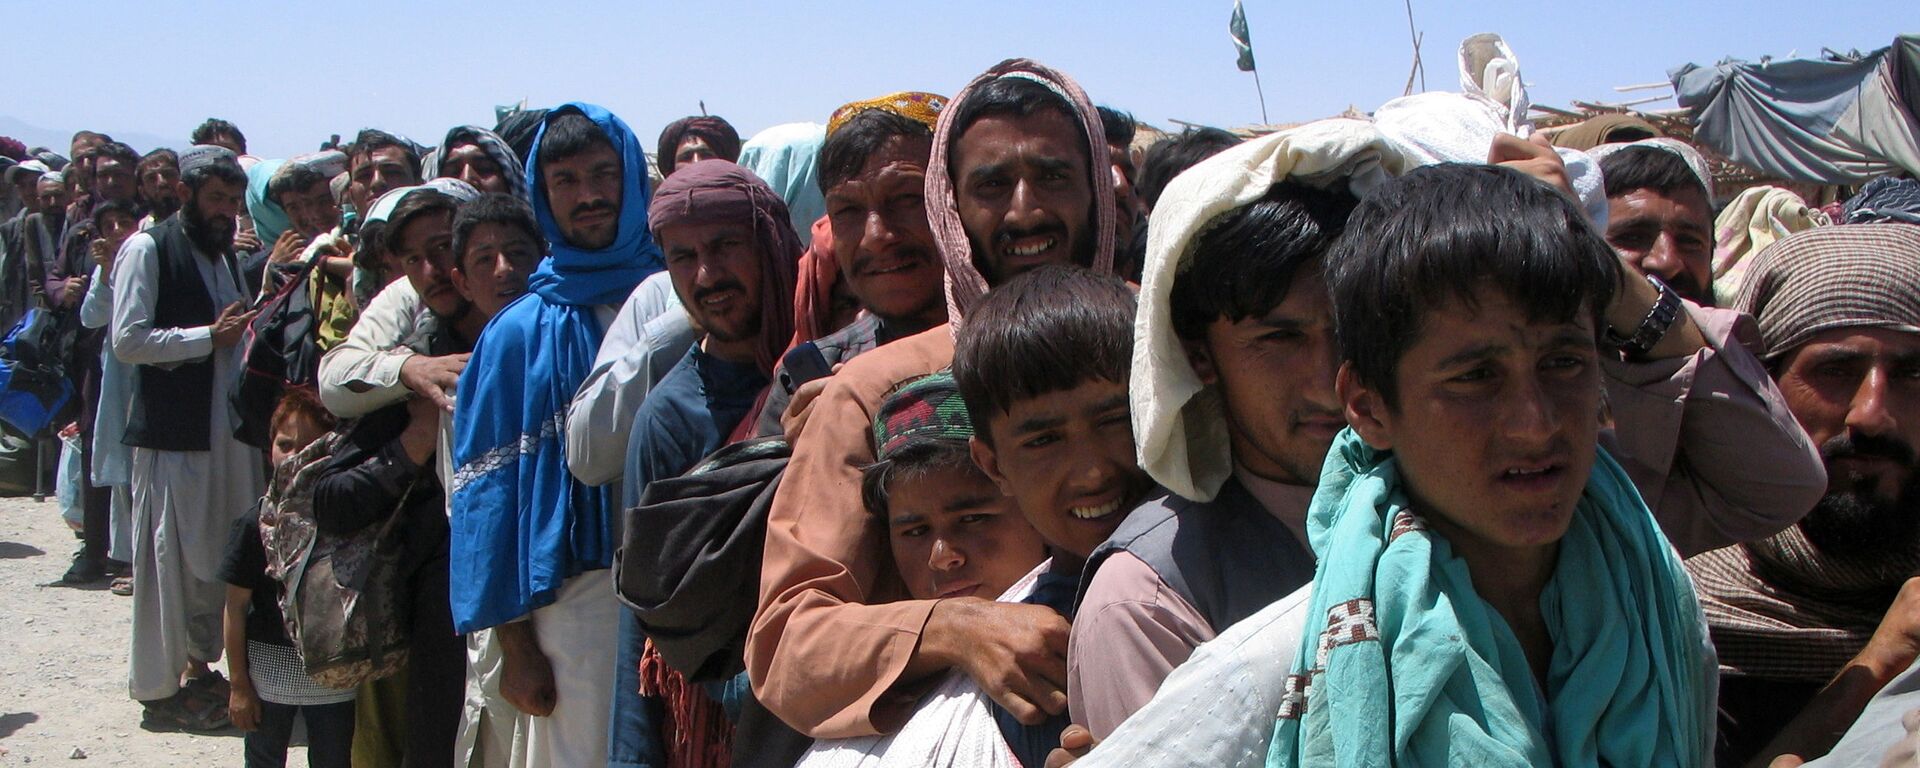 Nhóm người trước trạm kiểm soát Cổng Tình bạn ở Chaman, thị trấn biên giới Pakistan-Afghanistan,  Pakistan - Sputnik Việt Nam, 1920, 04.09.2021